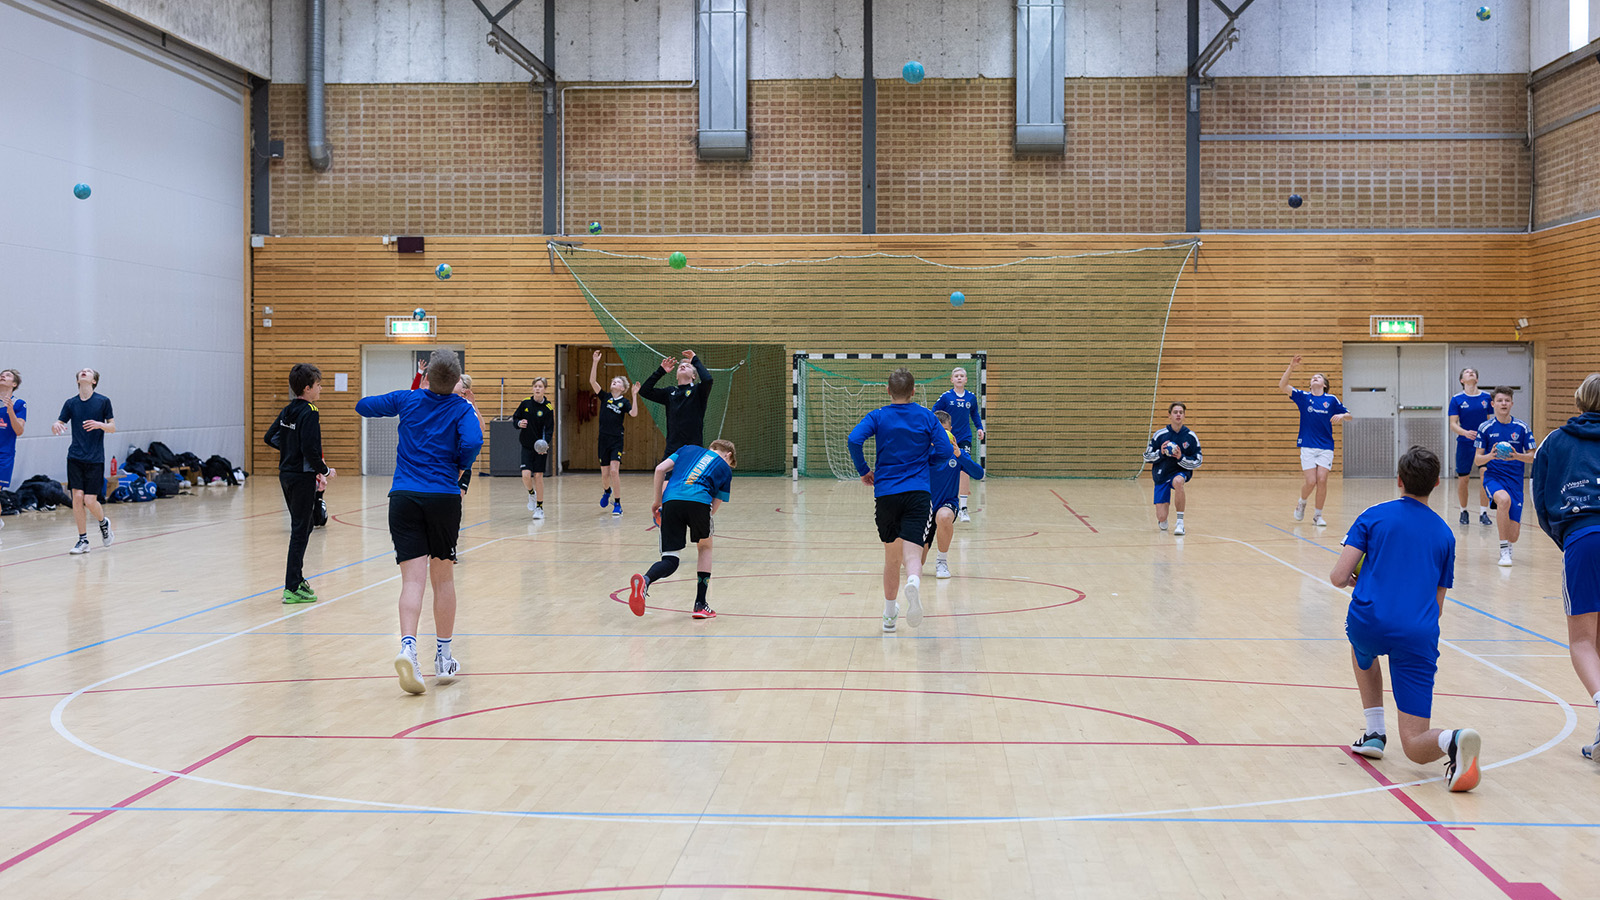 ett foto. spelare klädda i blått syns med ryggarna springandes i en handbollshall